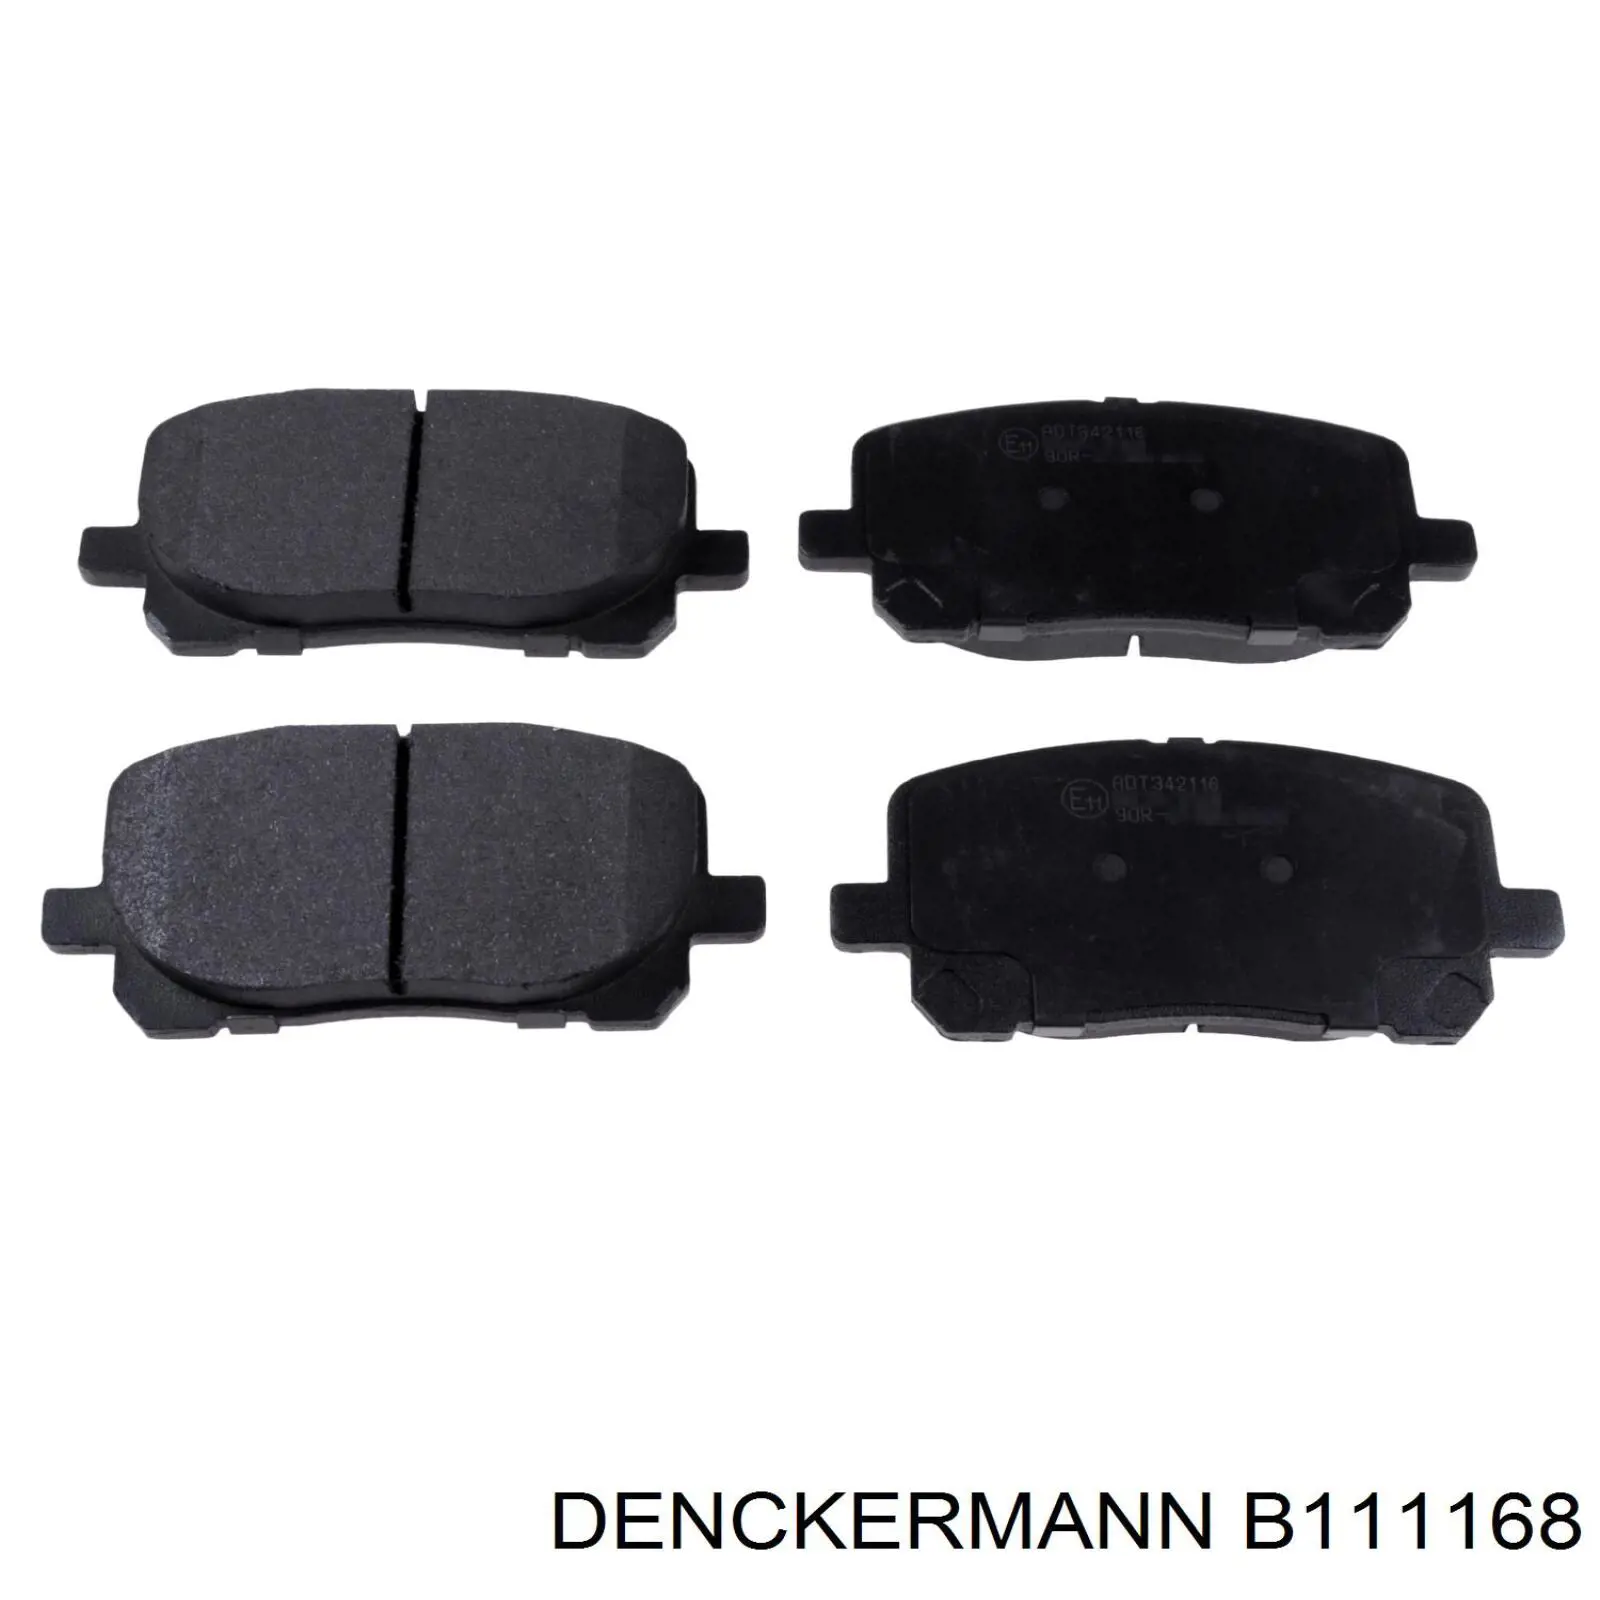 B111168 Denckermann pastillas de freno delanteras